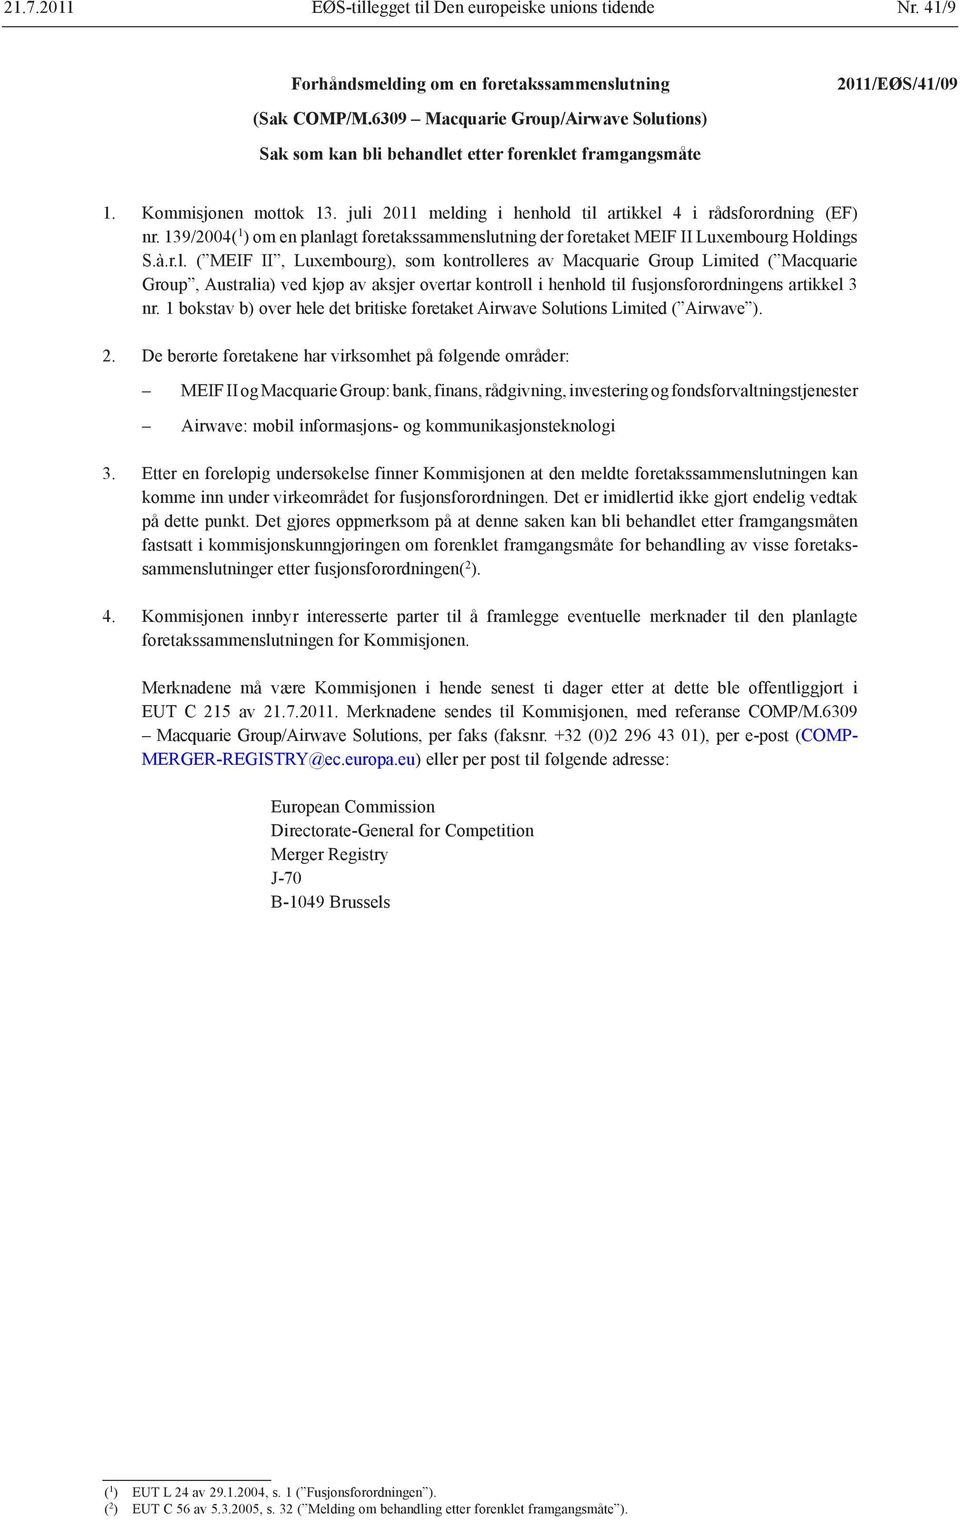 2011 melding i henhold til artikkel 4 i rådsforordning (EF) nr. 139/2004( 1 ) om en planlagt foretakssammenslutning der foretaket MEIF II Luxembourg Holdings S.à.r.l. ( MEIF II, Luxembourg), som kontrolleres av Macquarie Group Limited ( Macquarie Group, Australia) ved kjøp av aksjer overtar kontroll i henhold til fusjonsforordningens artikkel 3 nr.